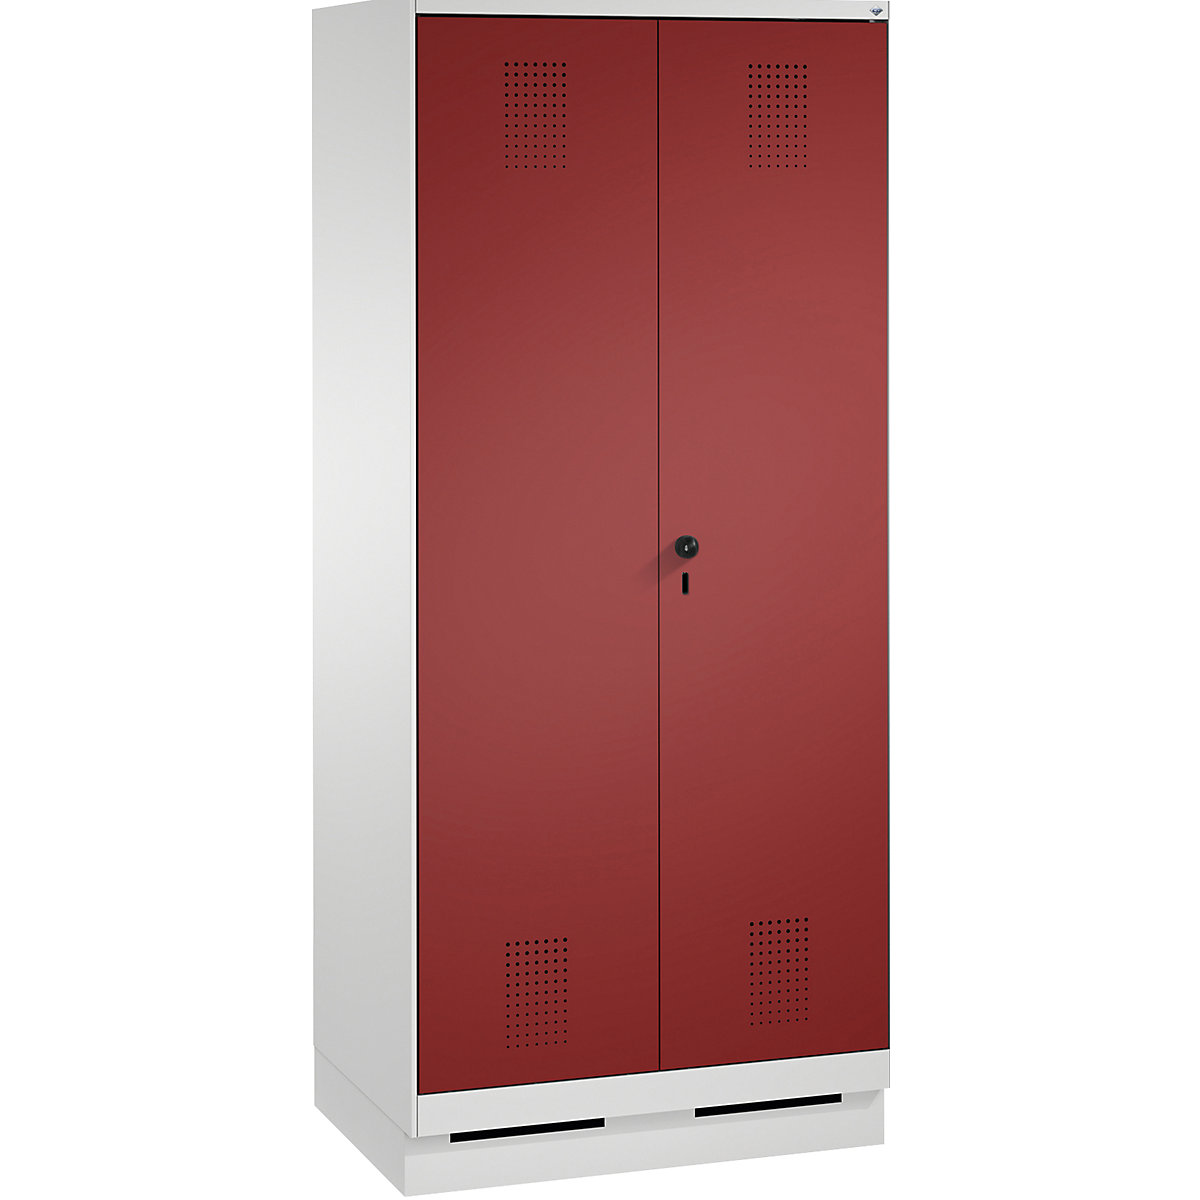 Garderobna omara EVOLO, dvokrilna vrata – C+P, 2 razdelka, širina razdelka 400 mm, s podnožjem, svetlo siva / rubinasto rdeča-12